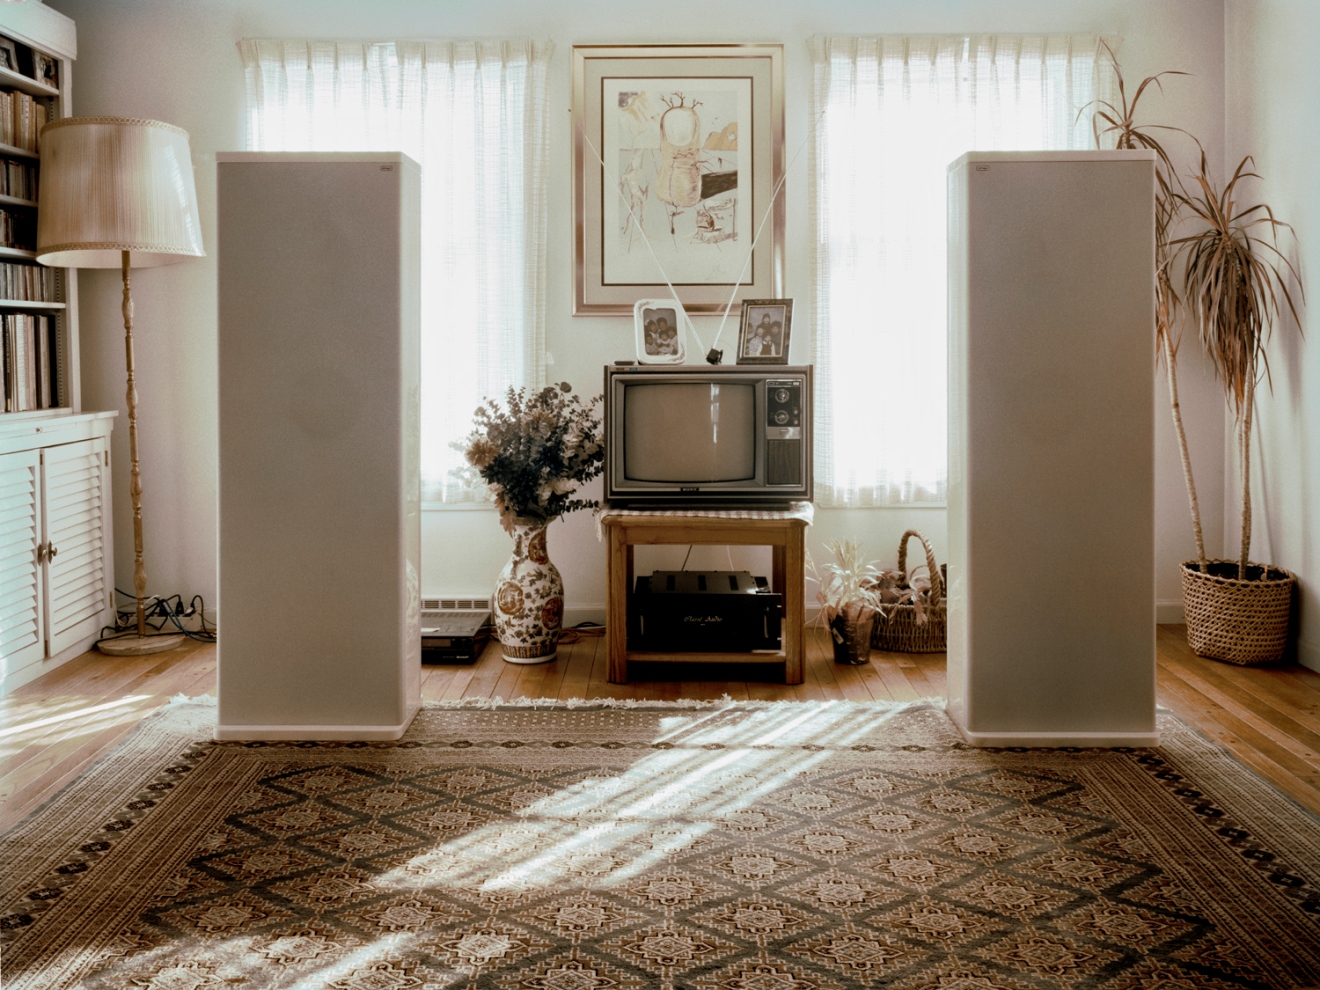 《登堂入室》攝影展　給予一次奢侈想像空間